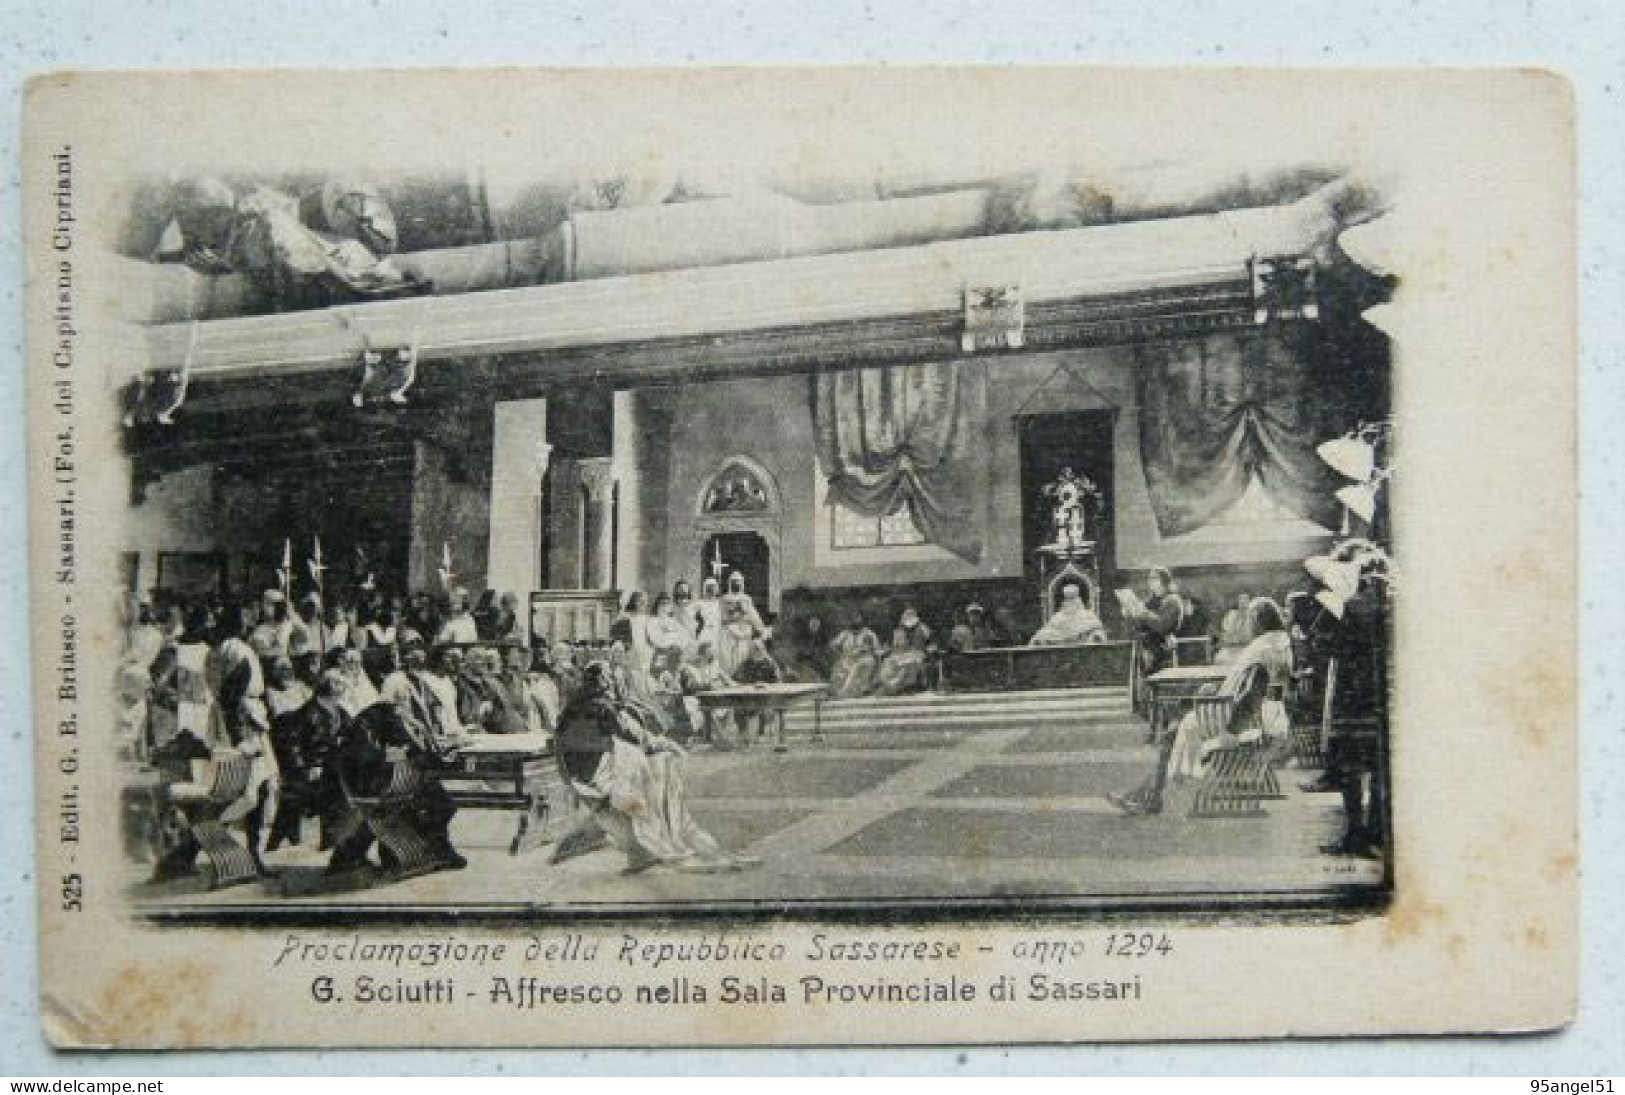 SASSARI - AFFRESCO DI G. SCIUTTI NELLA SALA PROVINCIALE - PROCLAMAZIONE DELLA REPUBBLICA SASSARESE 1900 CARD 124 ANNI! - Sassari